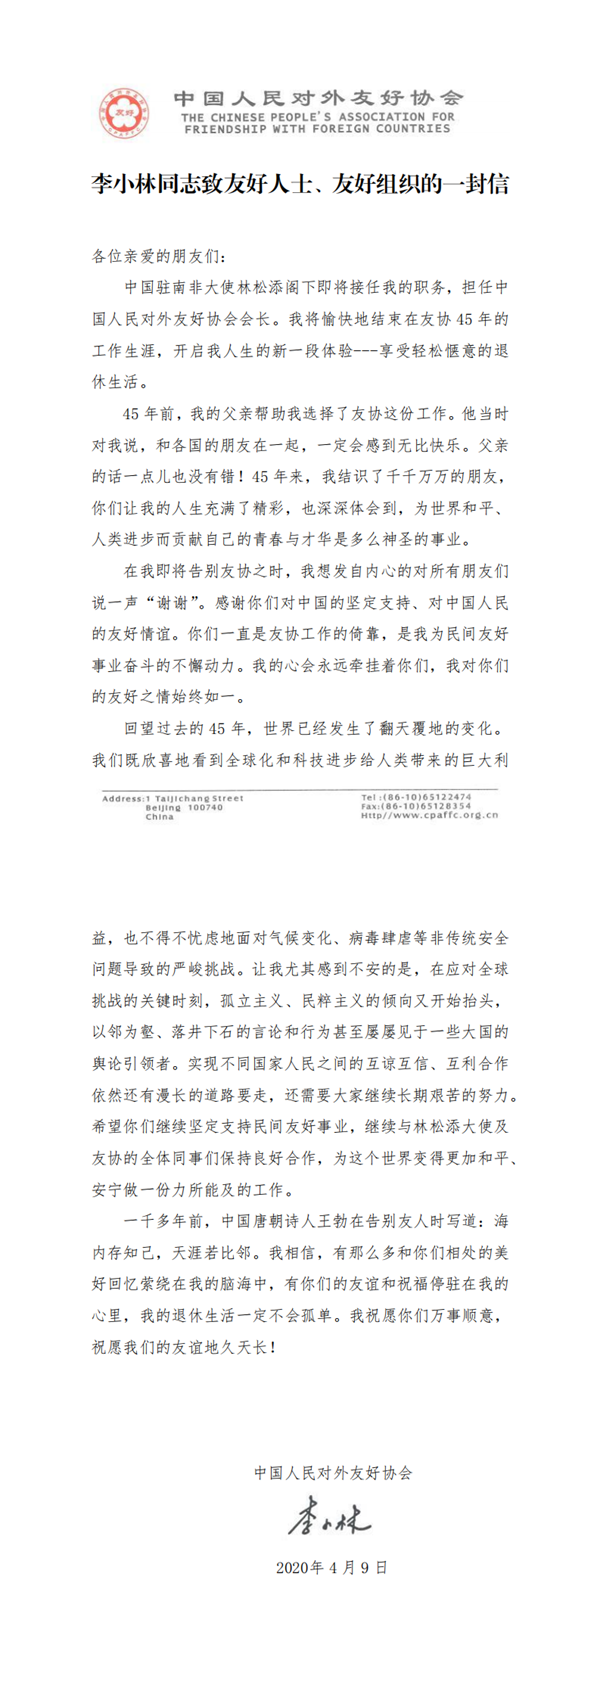 李小林同志致友好人士、友好组织的一封信(2)_0_副本.png